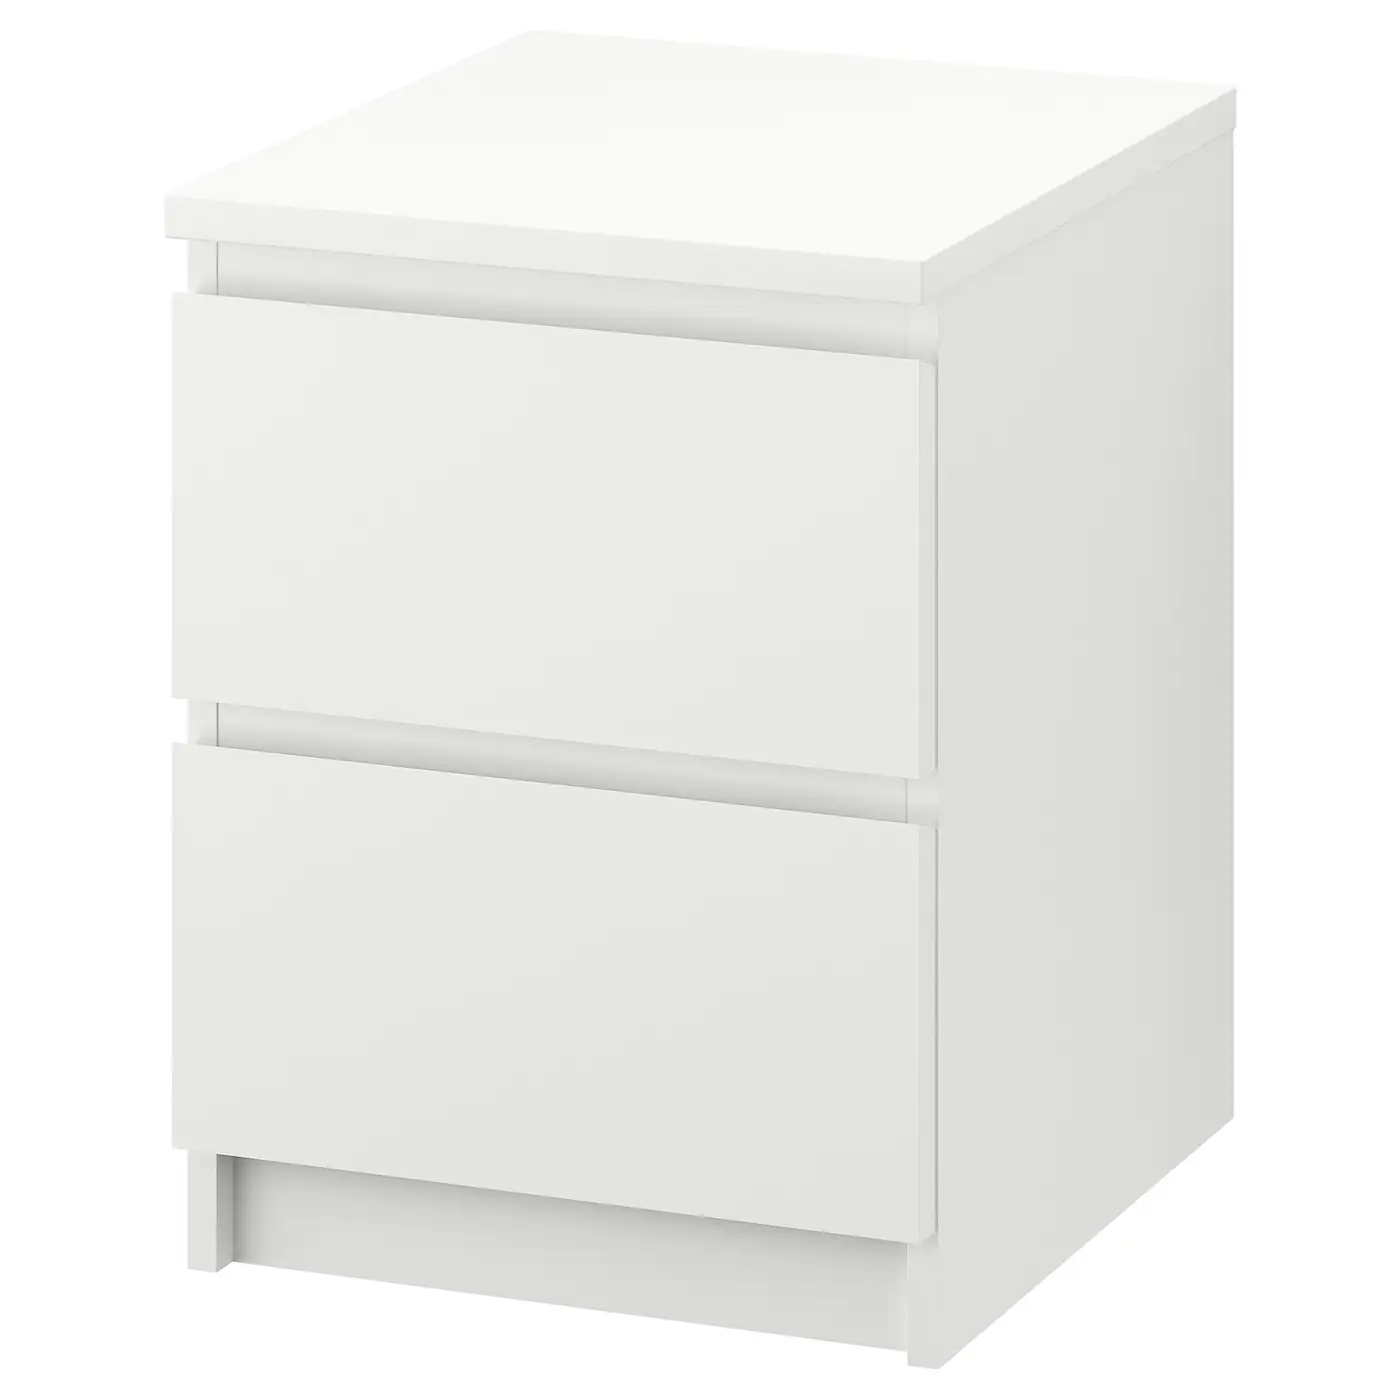 Комод «Ikea» Malm, 2 ящика, белый, 40x55 см, 003.685.31